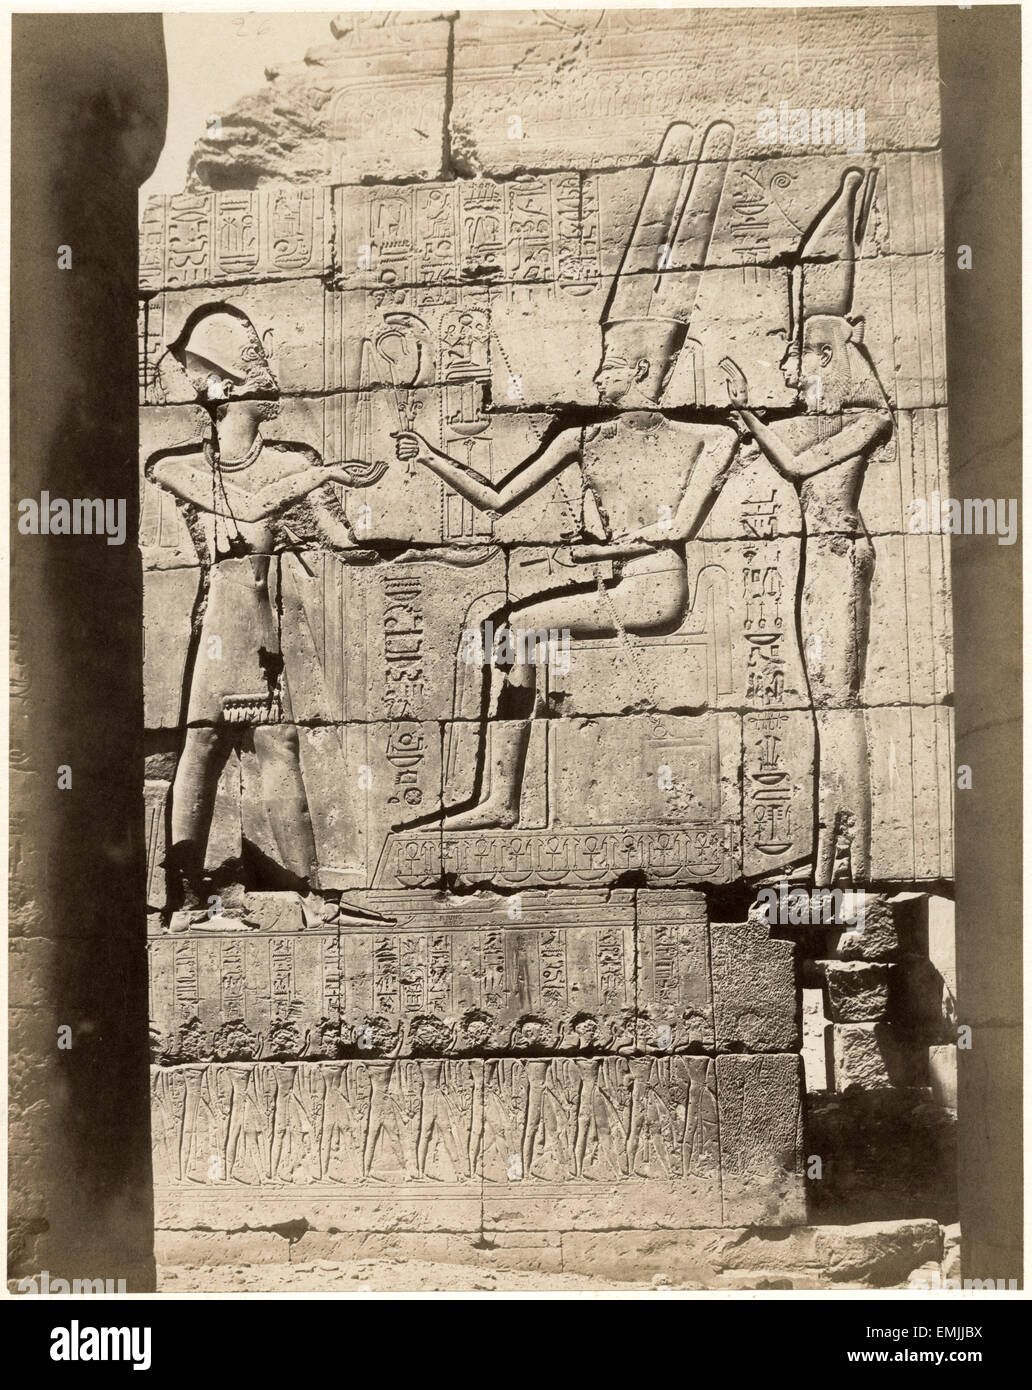 Ramsés, Templo de Memnon, Egipto, albúmina impresión, circa 1890 Foto de stock